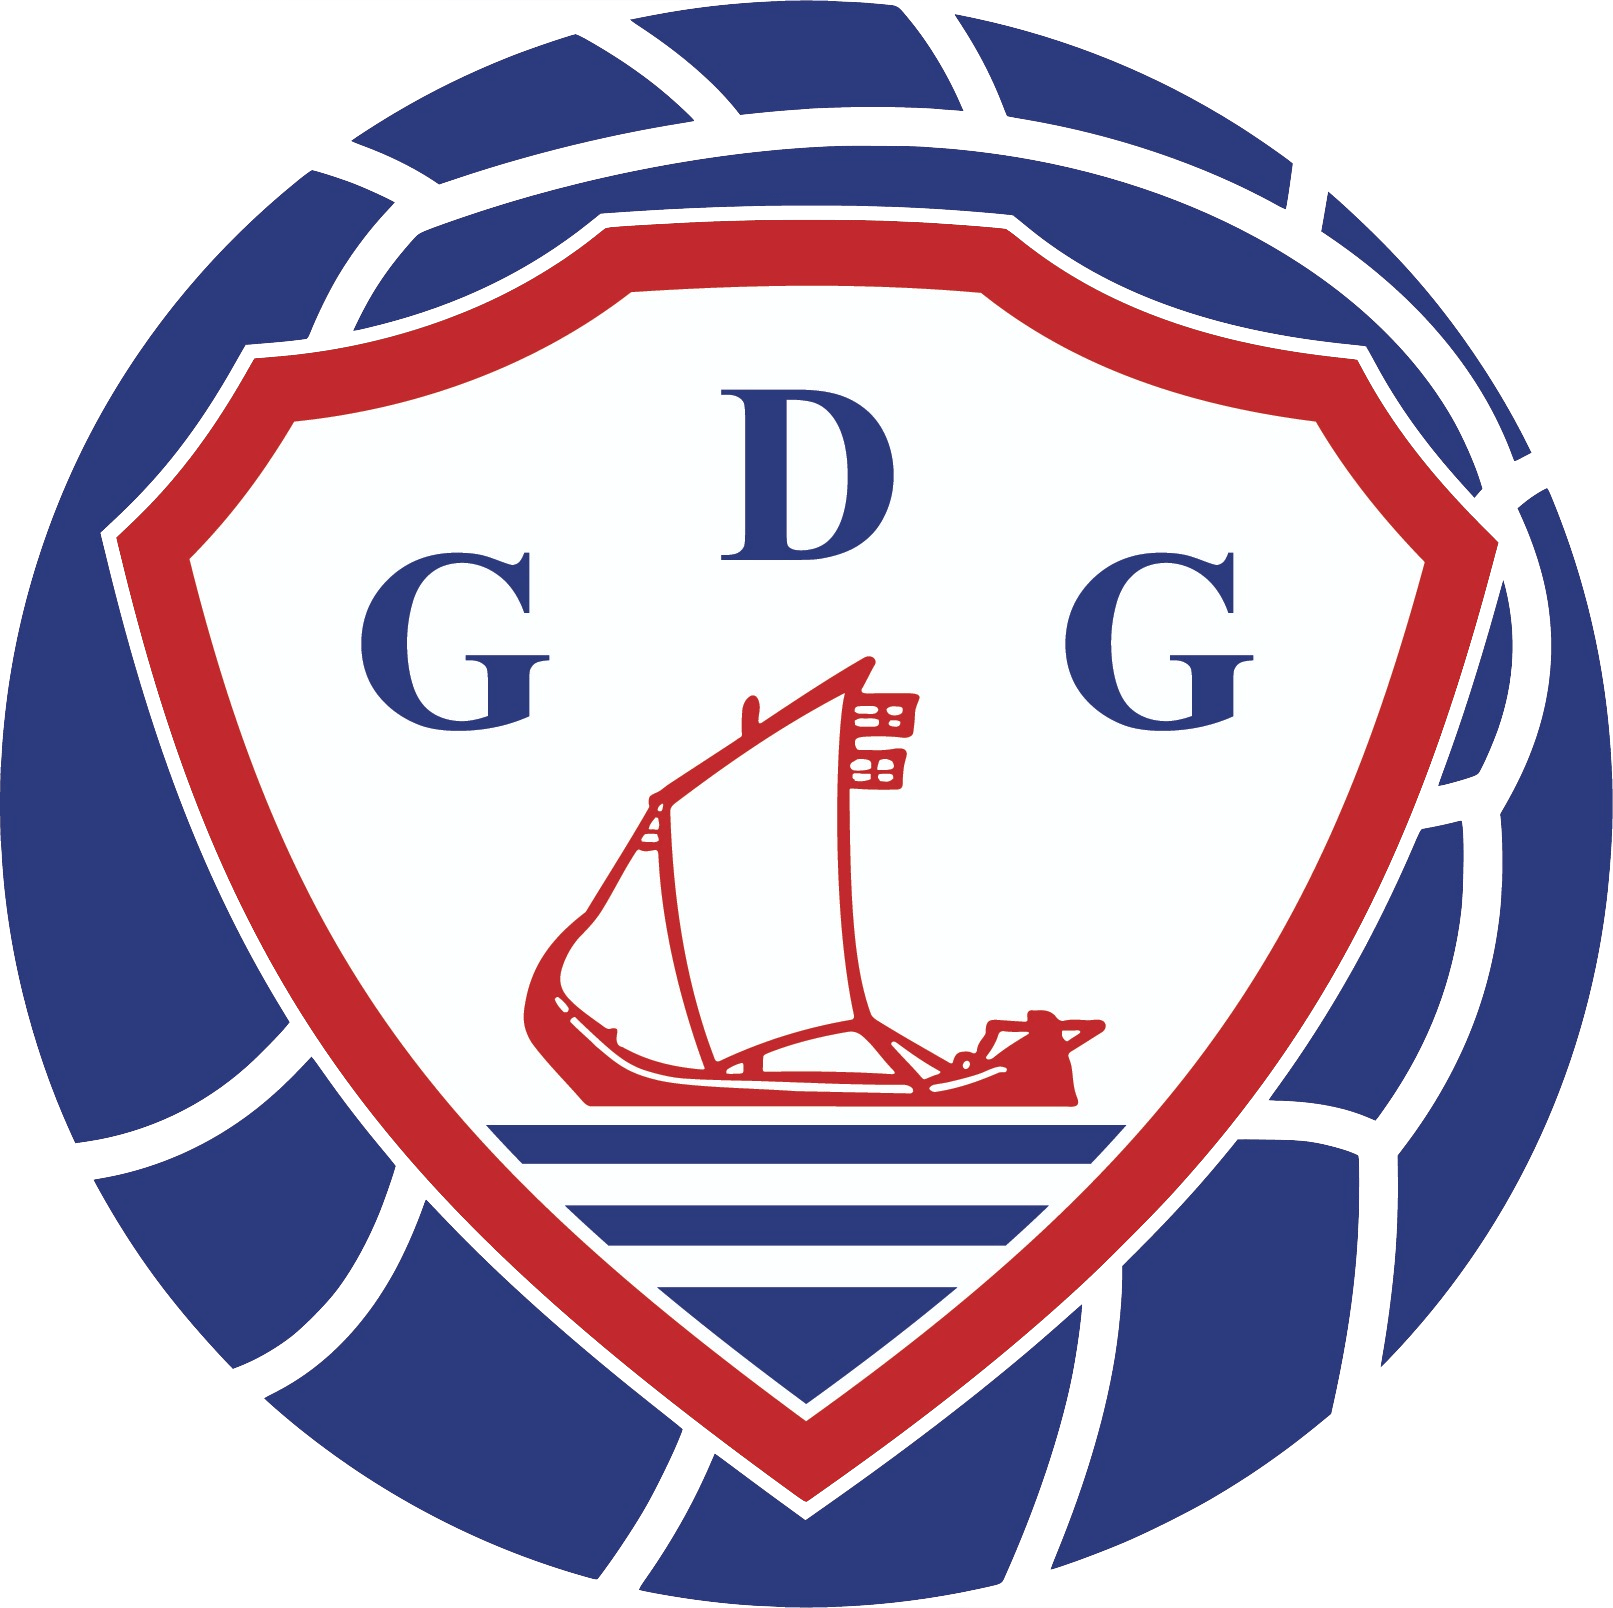 GD Gafanha B Futsal